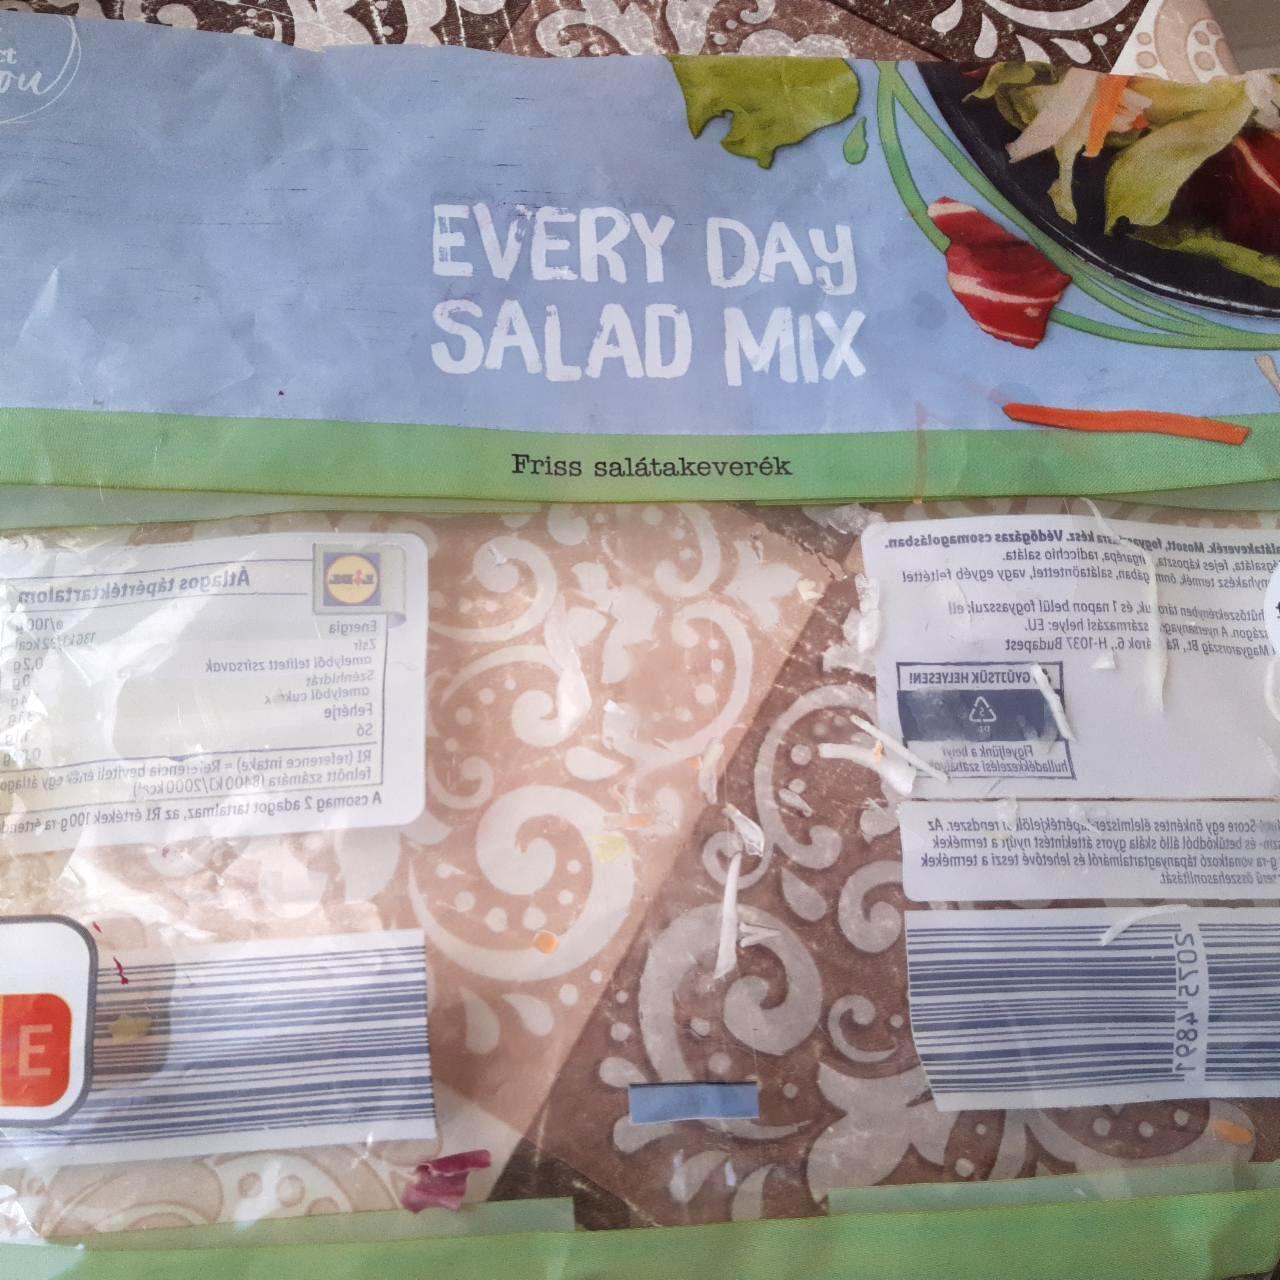 Képek - Everyday salad mix